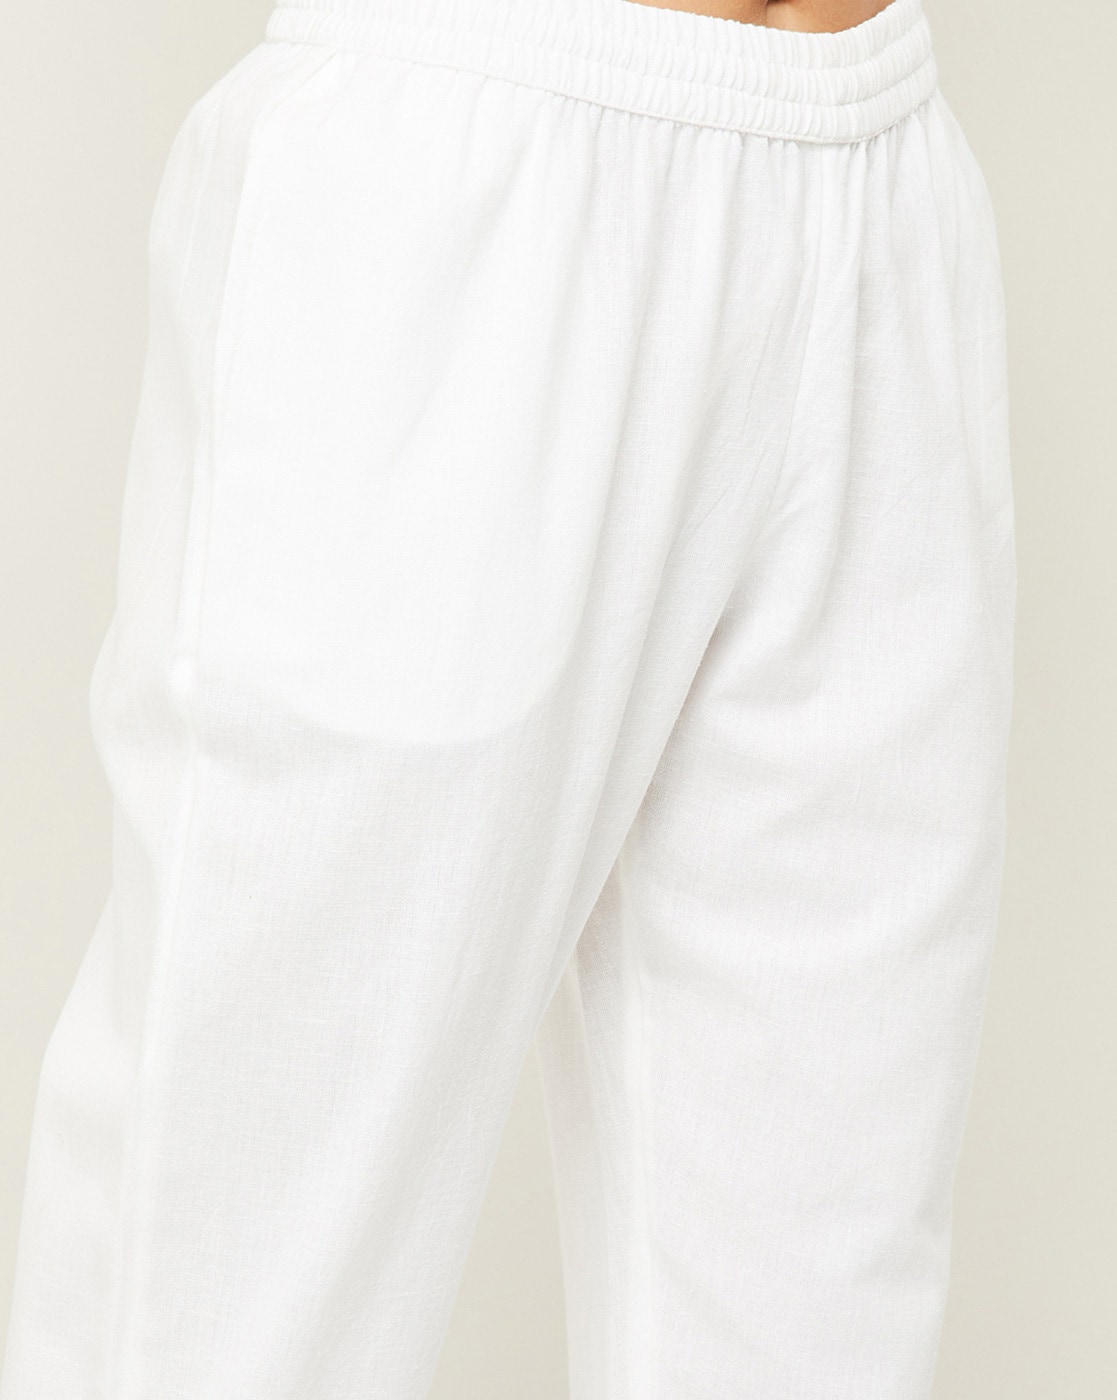 Buy White Trousers  Pants for Women by Twin Birds Online  Ajiocom